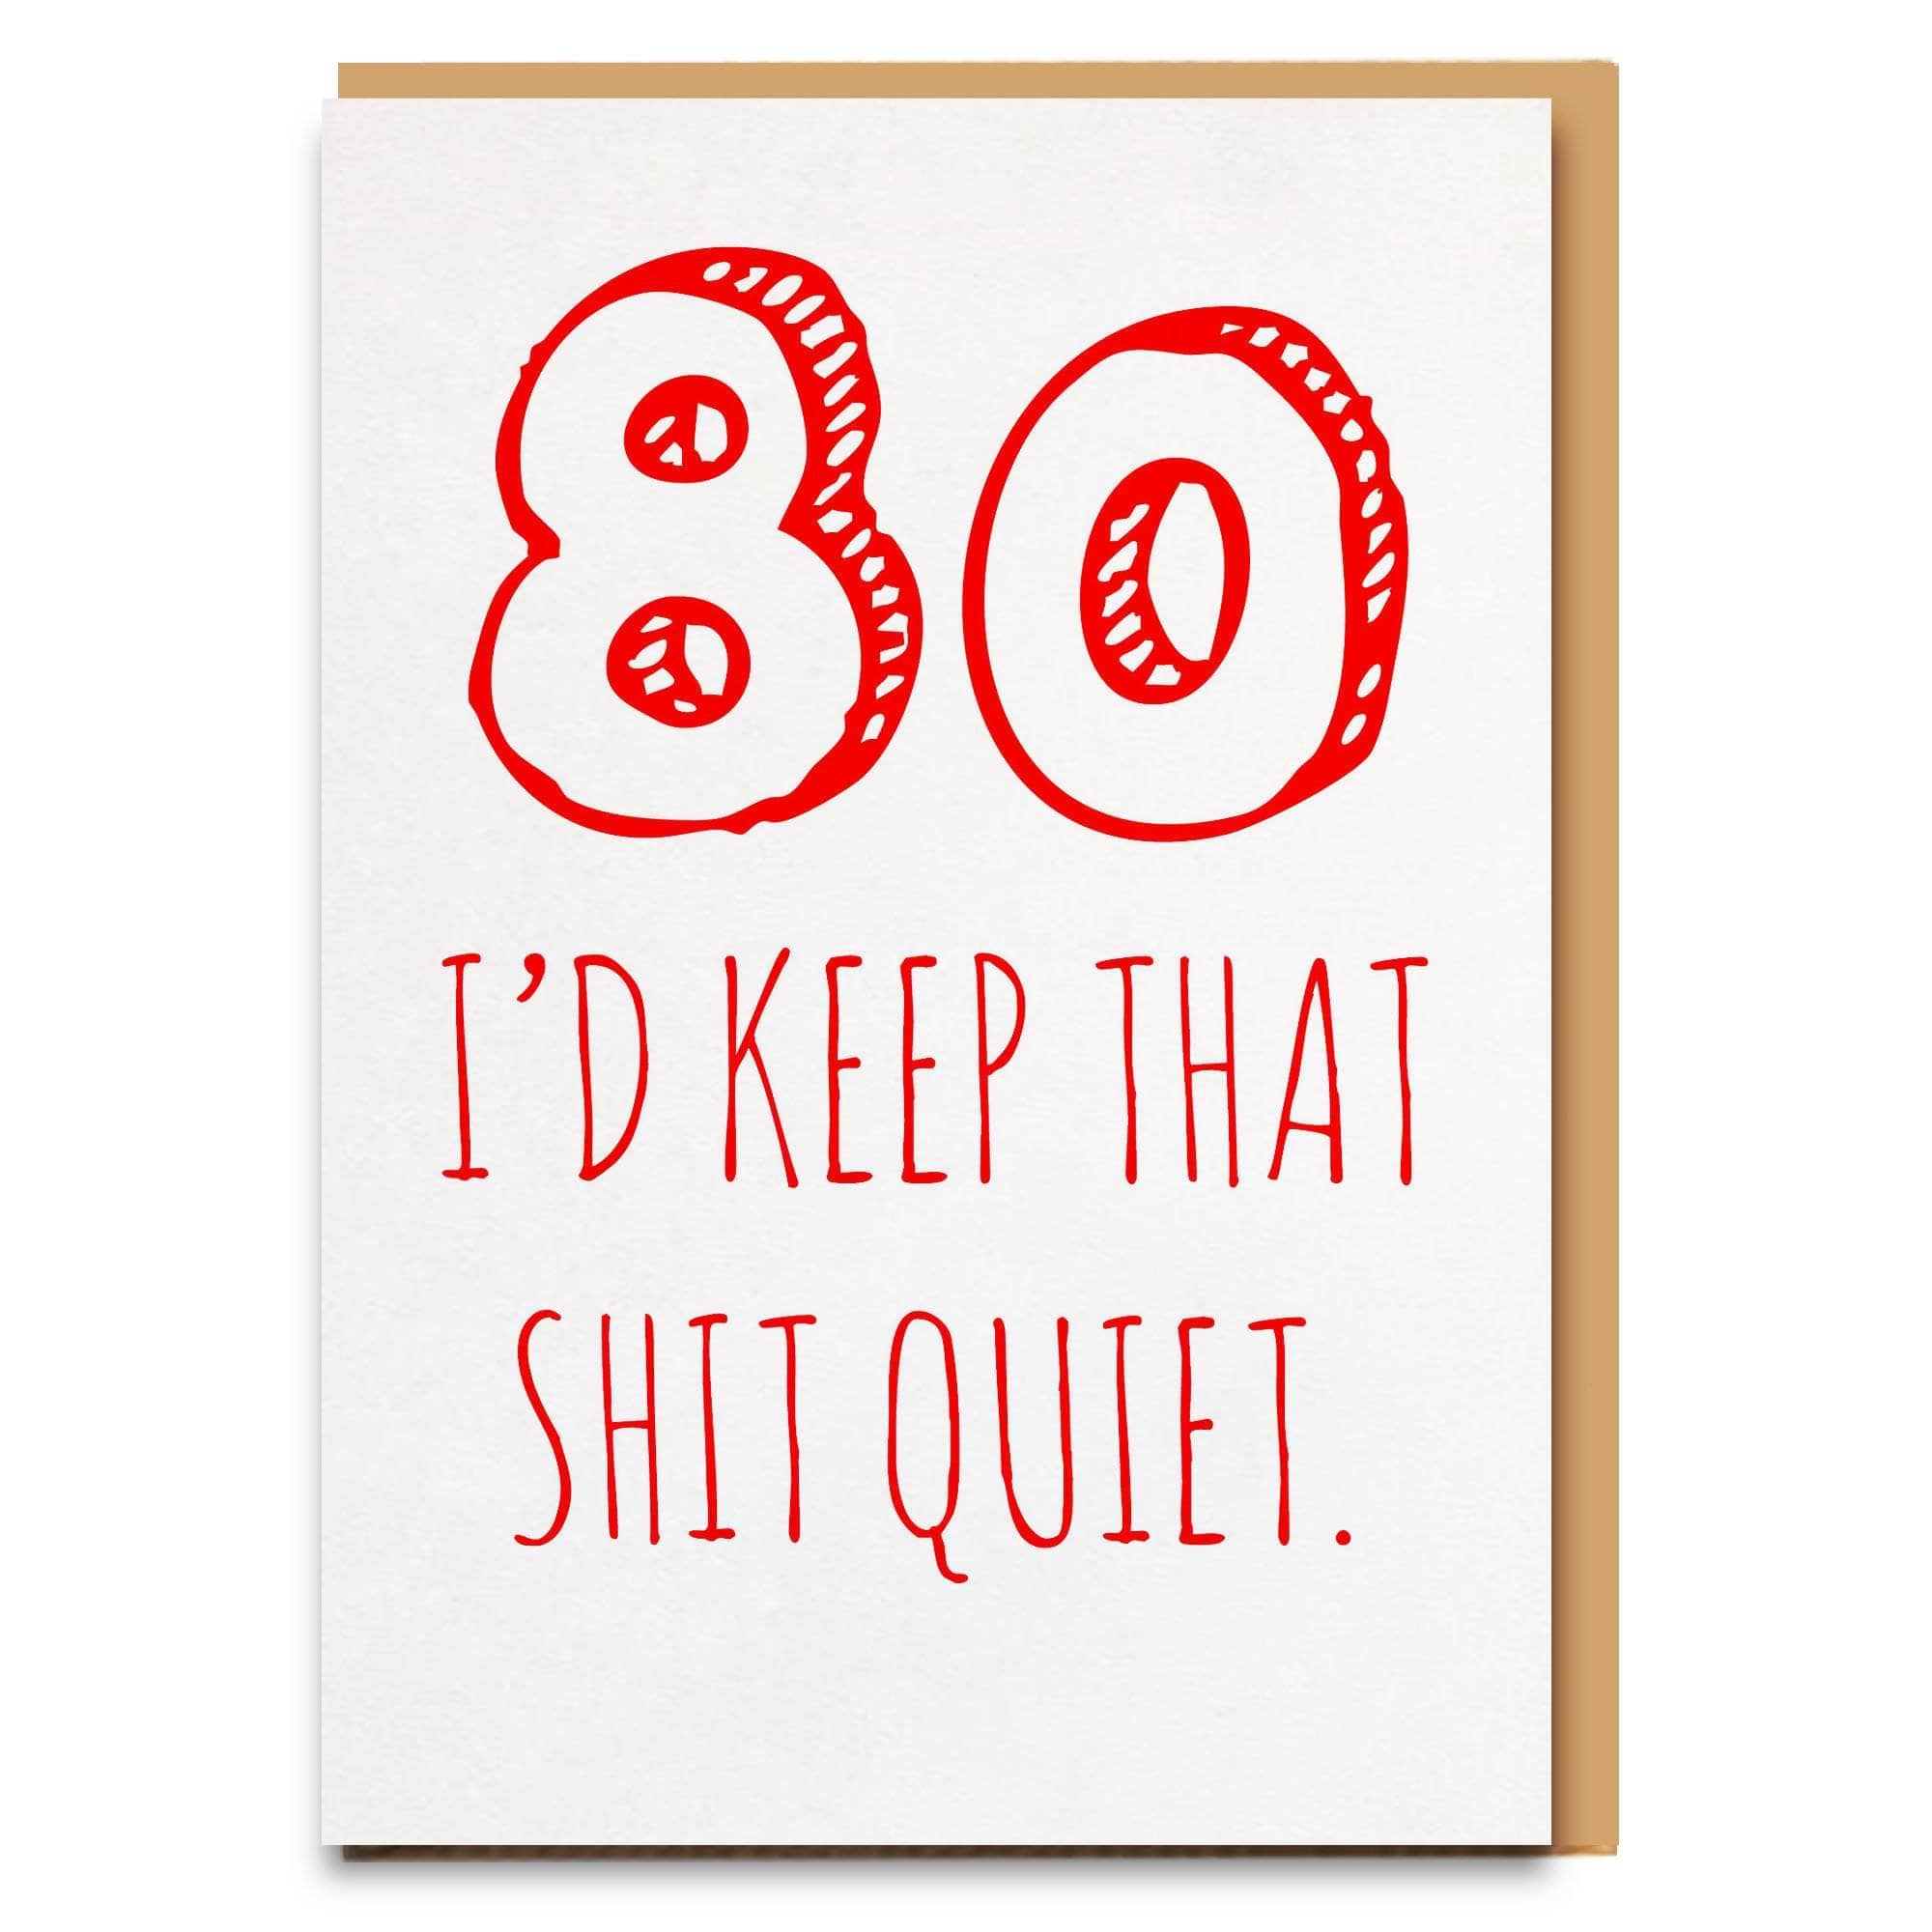 80 Quiet